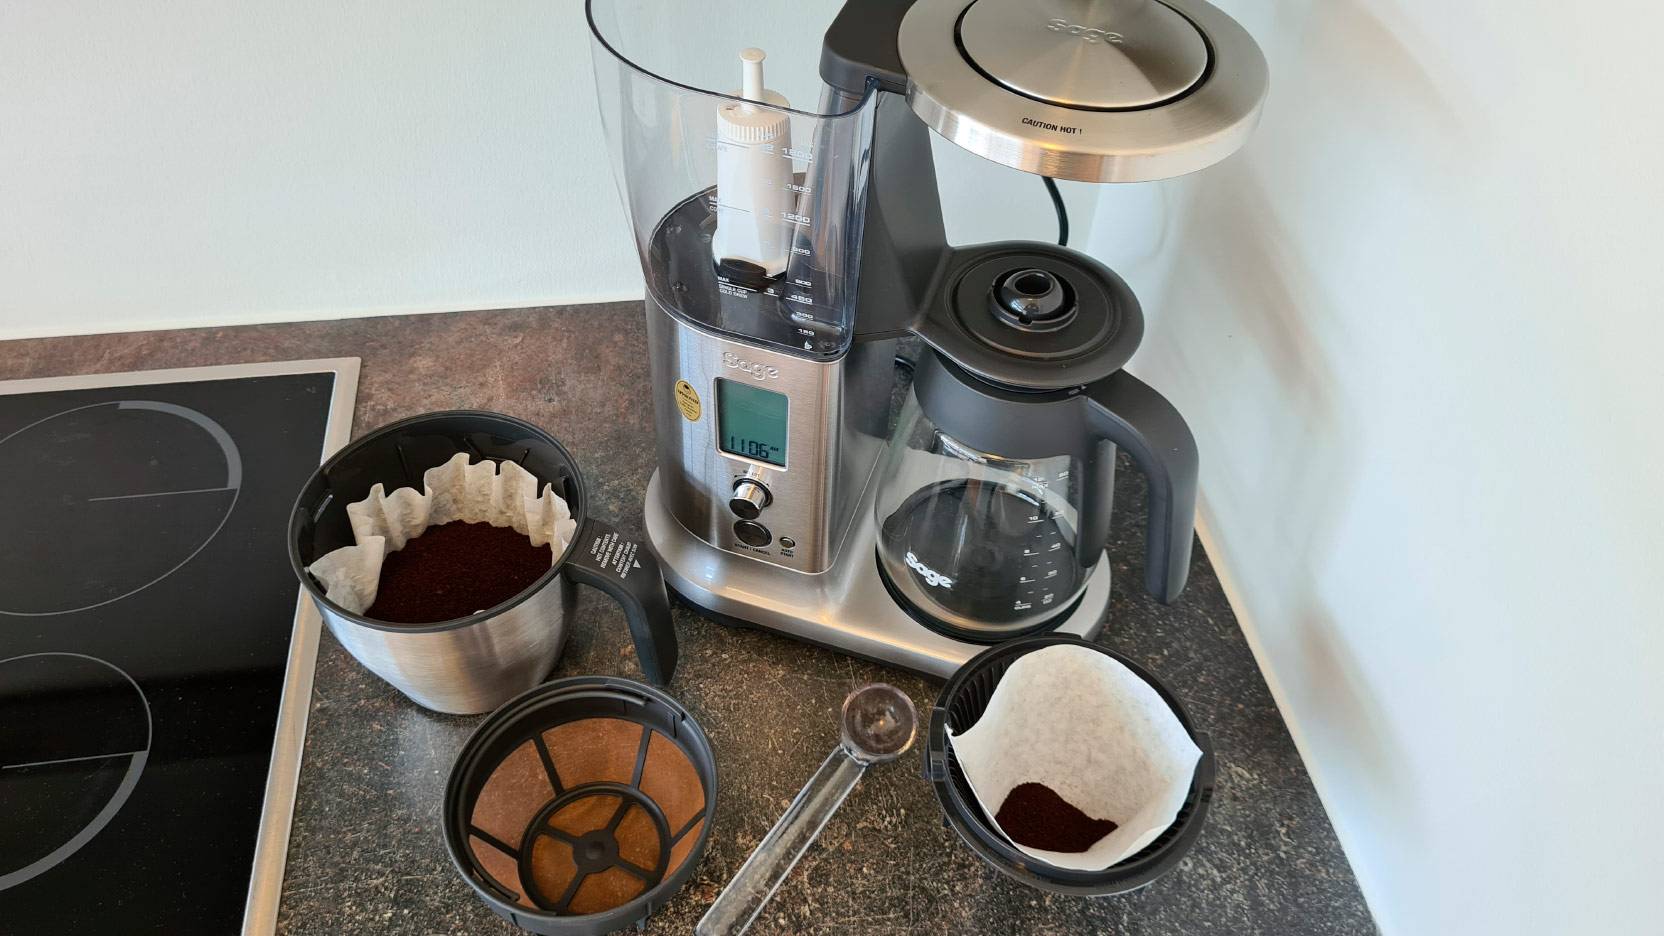 Test af Sage the Precision Brewer - kaffe i filtrene